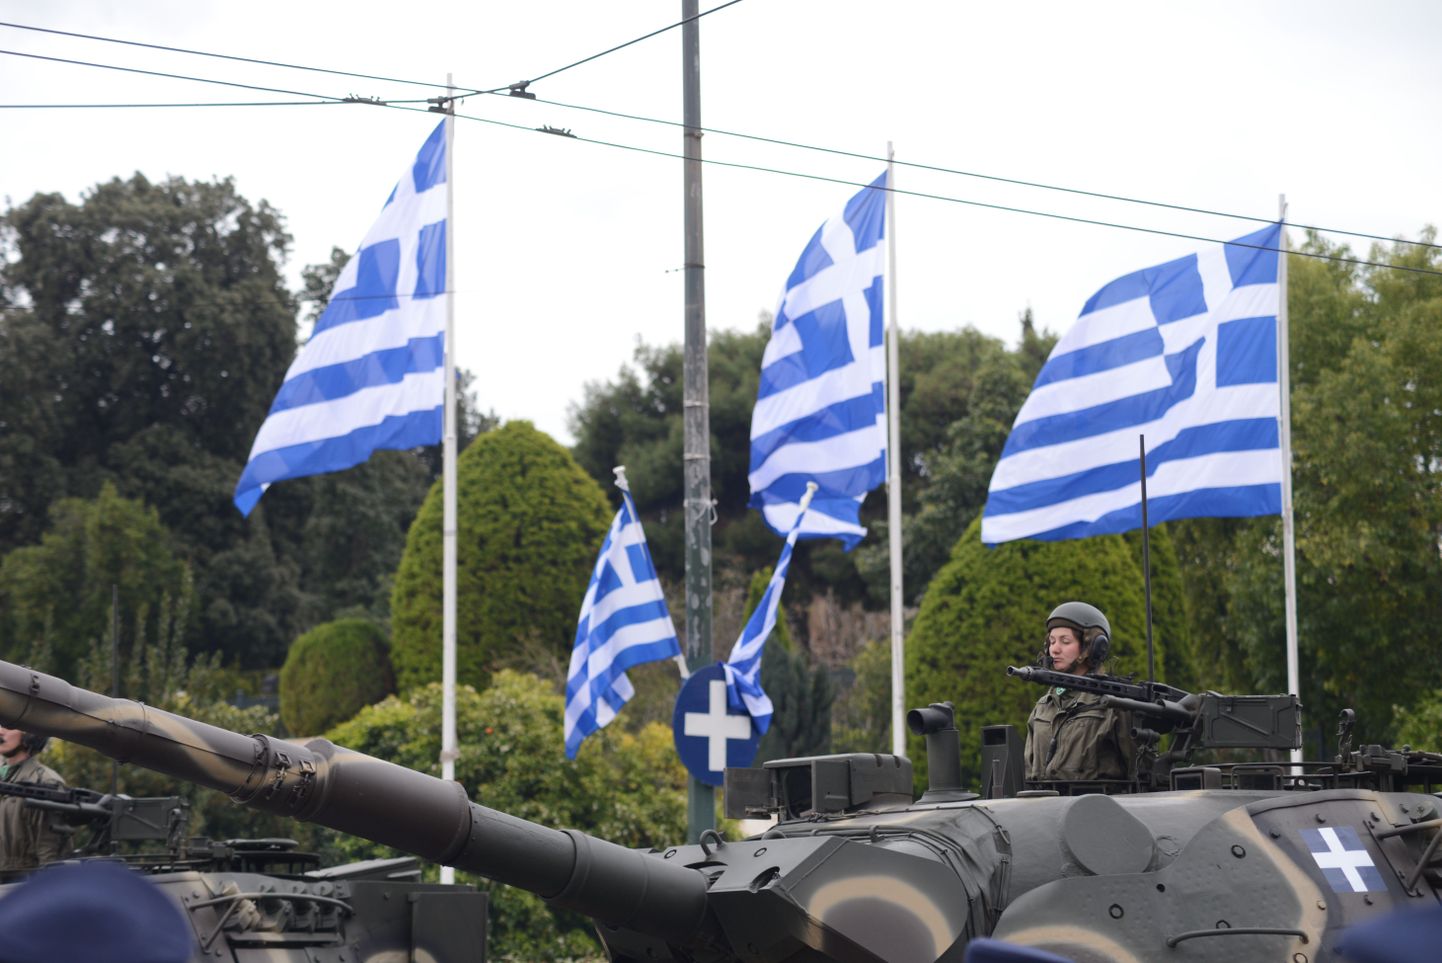 Kreeka tank paraadil. Pilt on illustratiivne